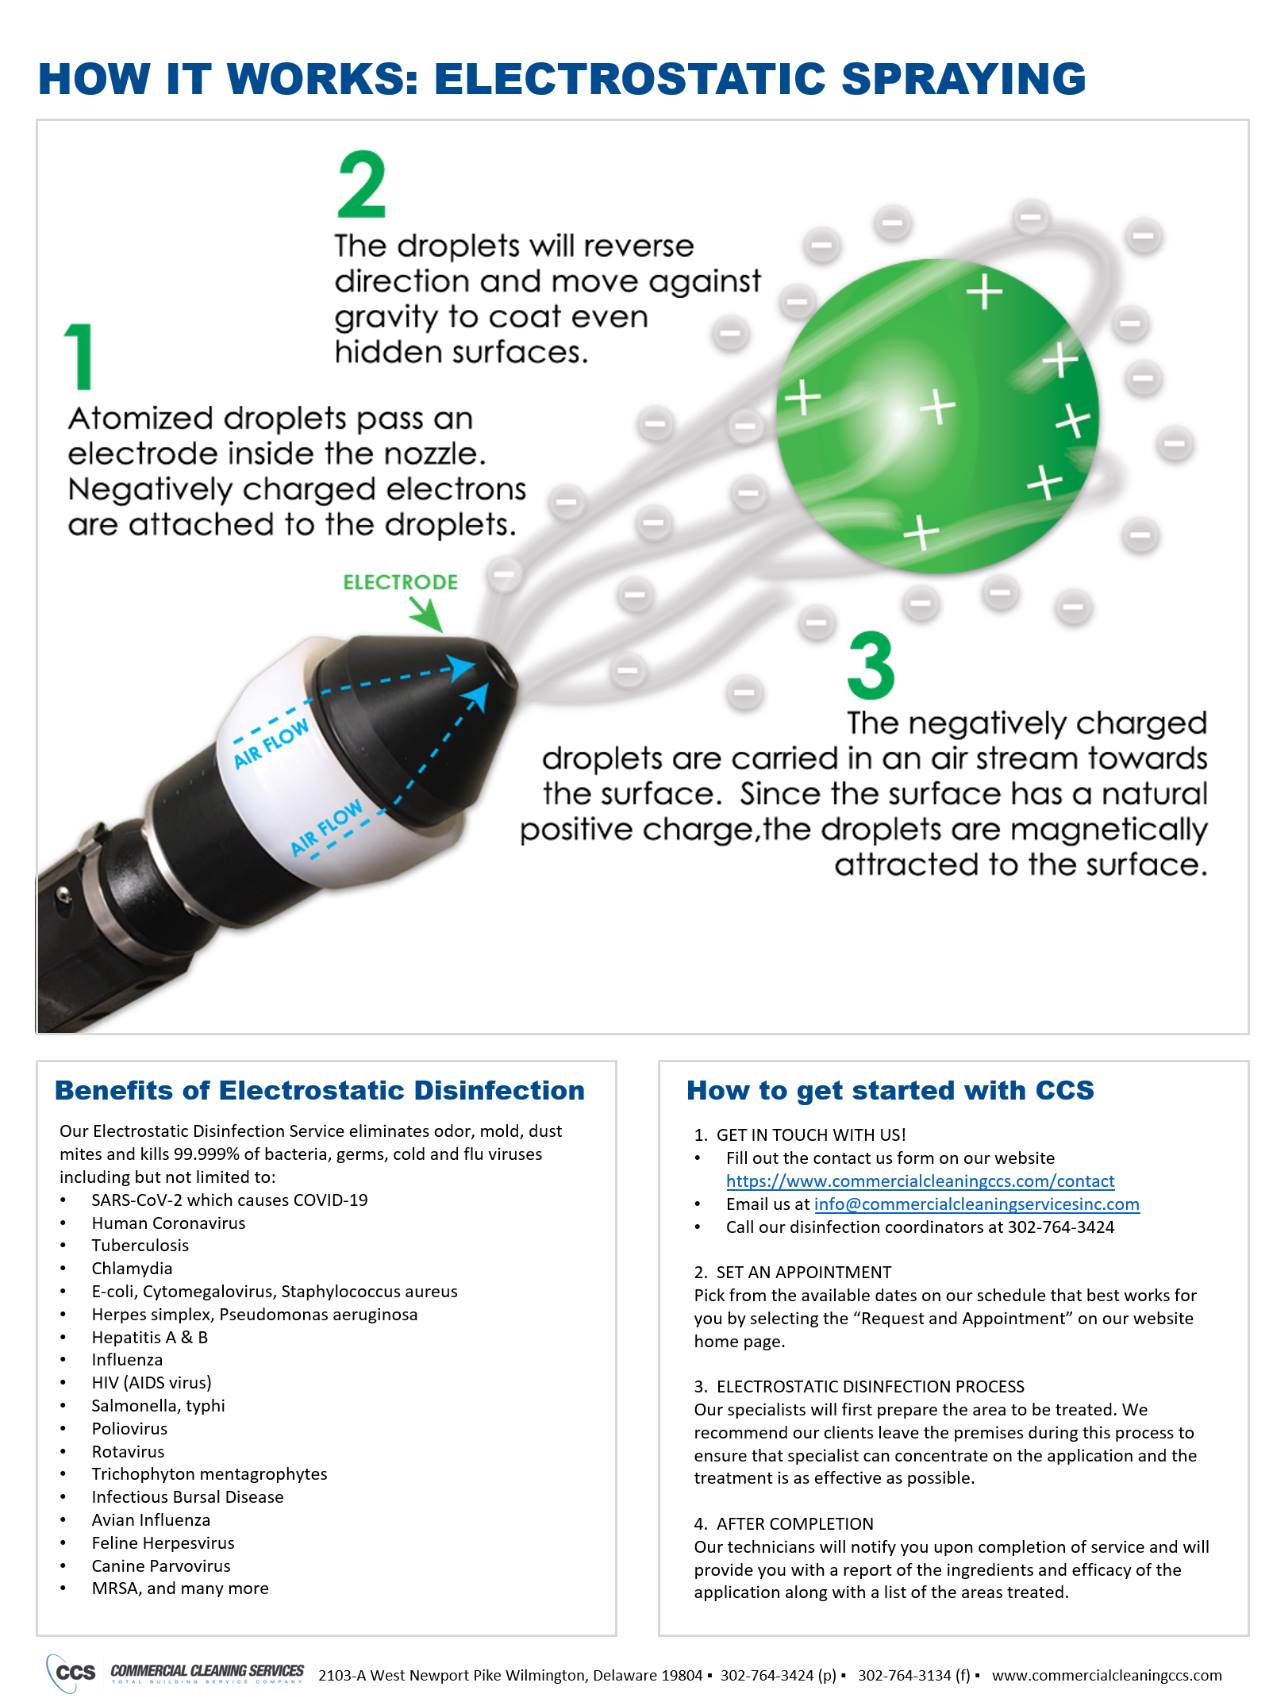 How It Works | Electrostatic Spraying